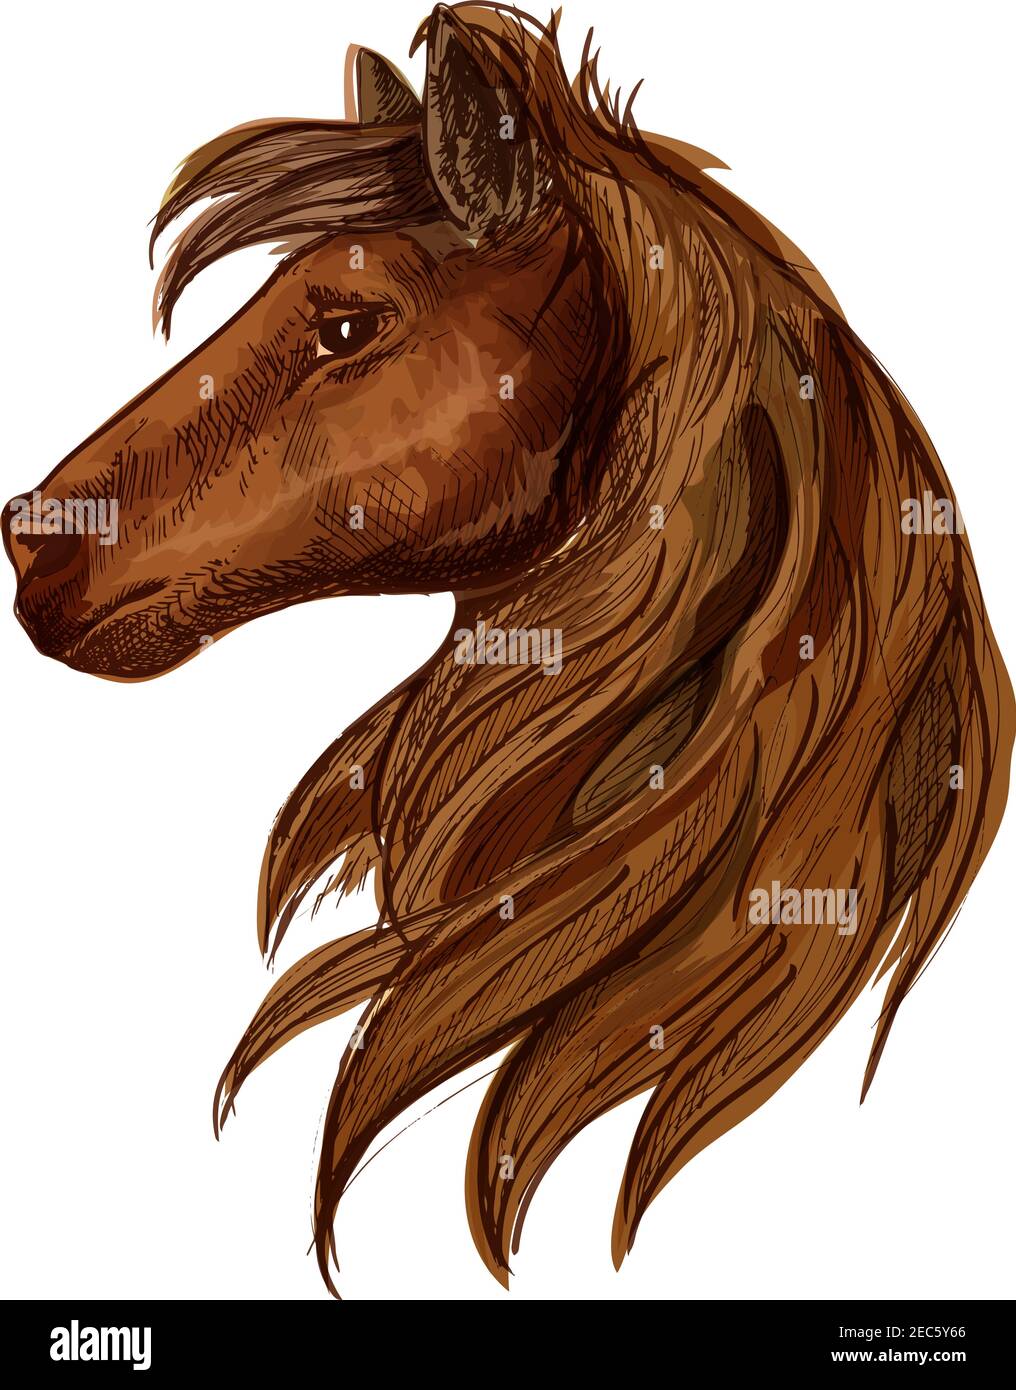 Pferdekopfporträt. Braunes Hengstfohlen mit Mähne und starrenden Augen Stock Vektor